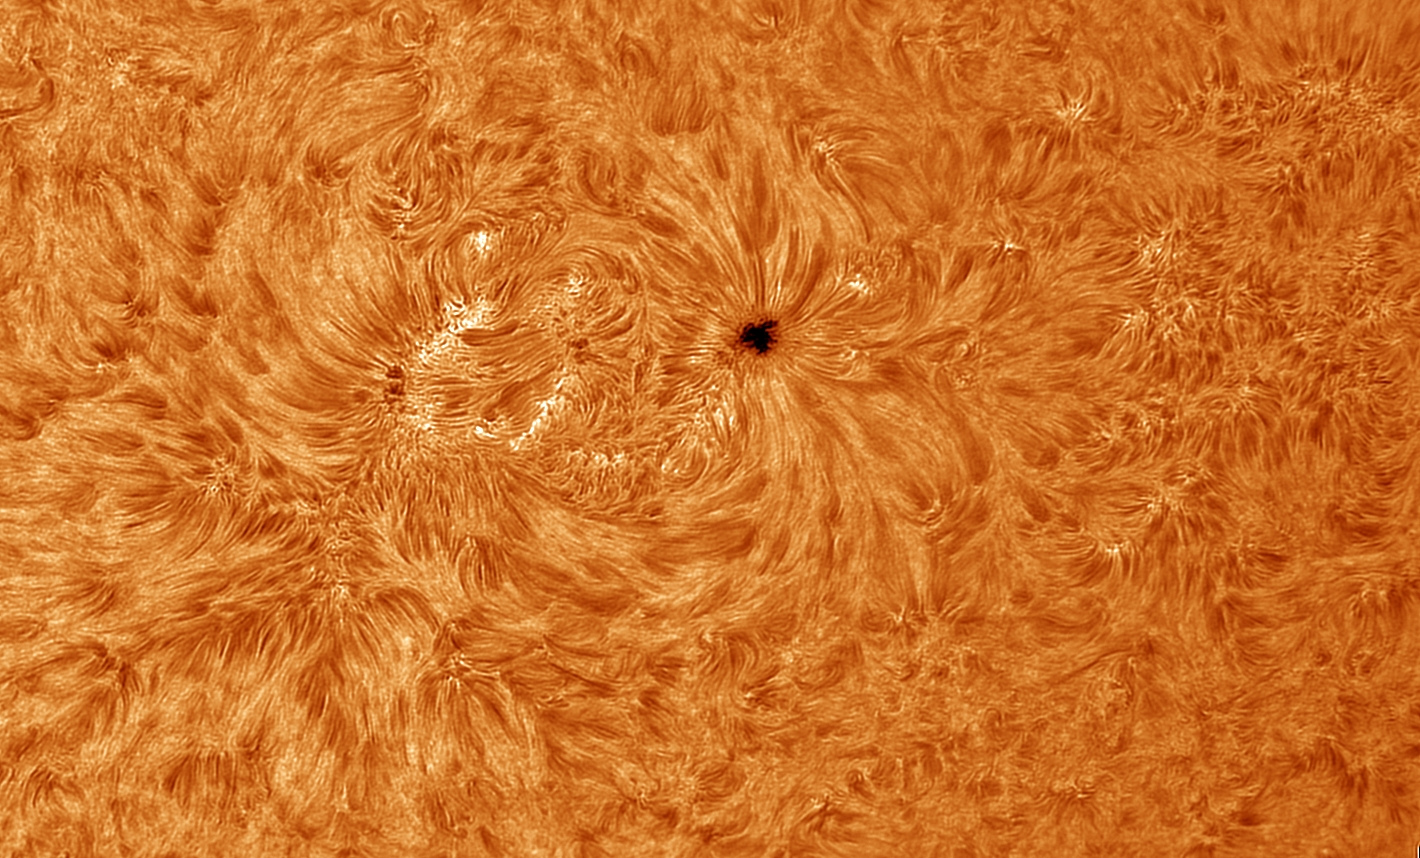 sol-d-23nov20-coul.jpg.58402c56b8f476cd7b8b4d98855954d6.jpg